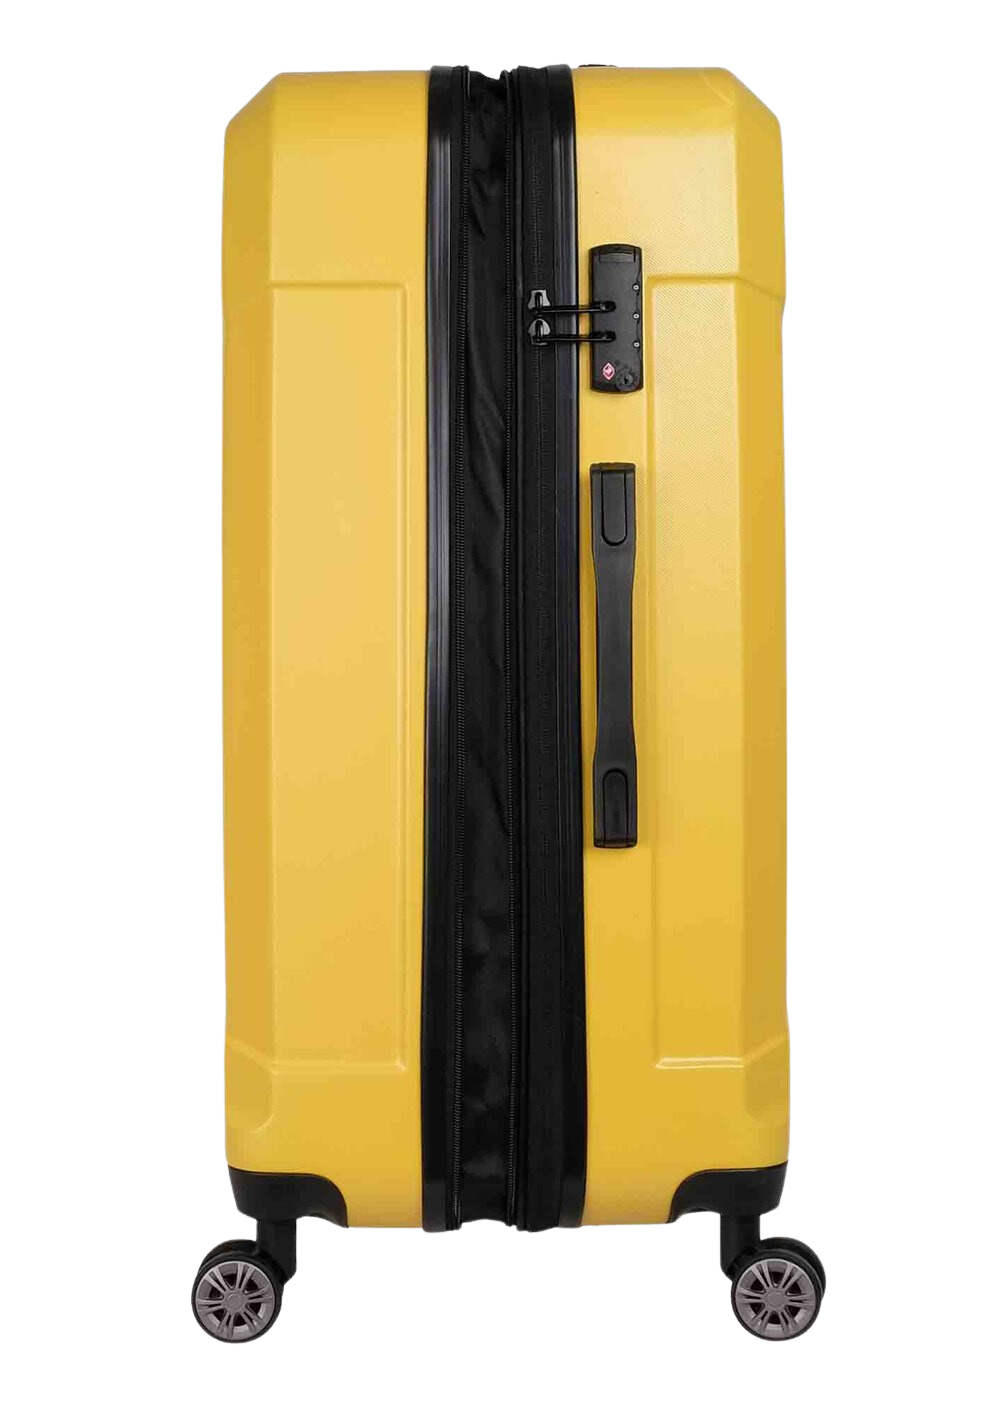 ✮מותג שוויצרי מקורי✮ מזוודה בינונית 24" קשיחה מבית המותג השוויצרי SwissBrand דגם Ranger